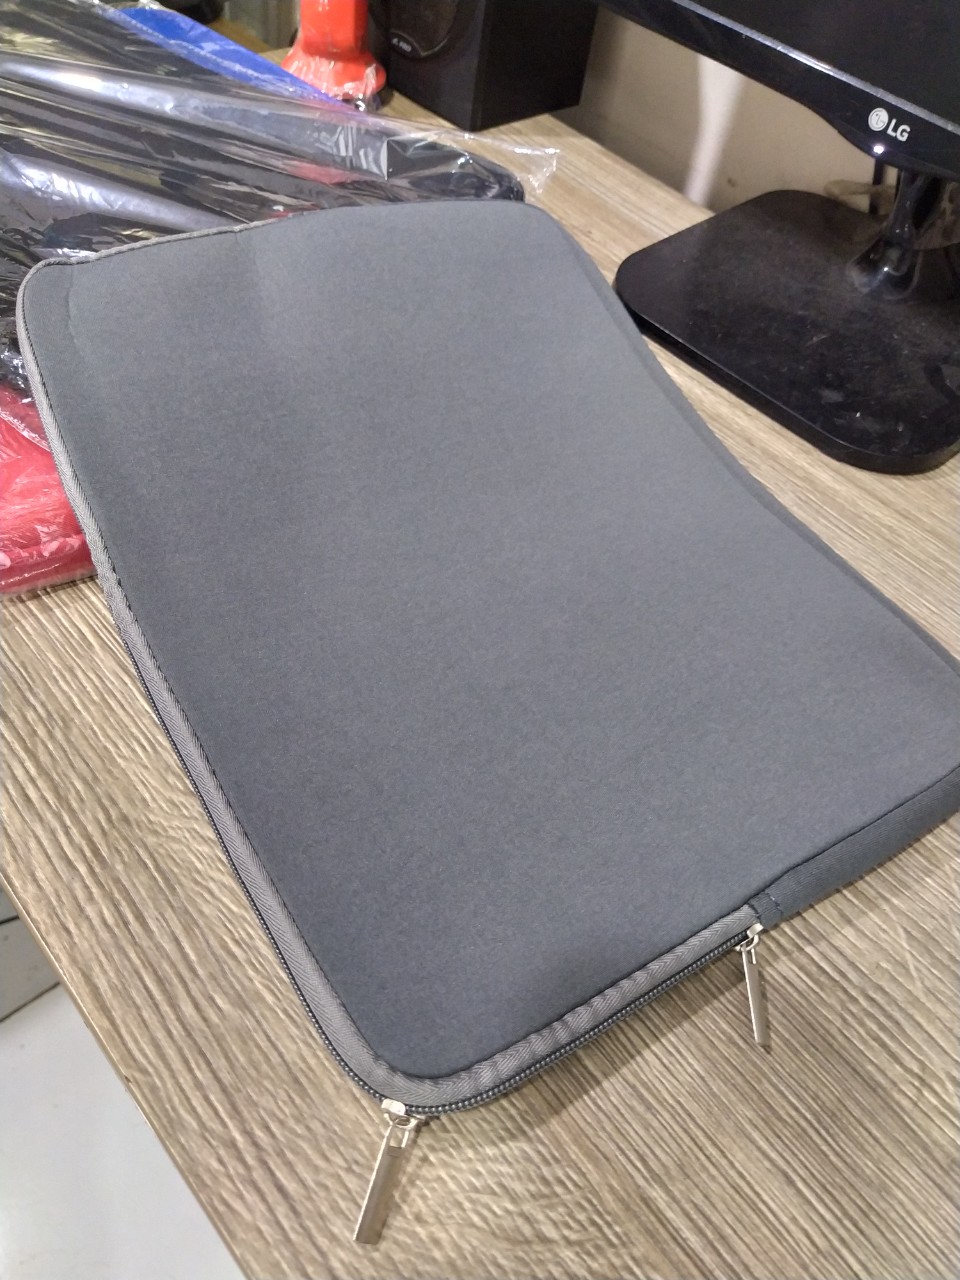 cặp chống sốc laptop 14 -  inch elastic siều dày thời trang Shalla (cặp chống sốc laptop giá sỉ rẻ)